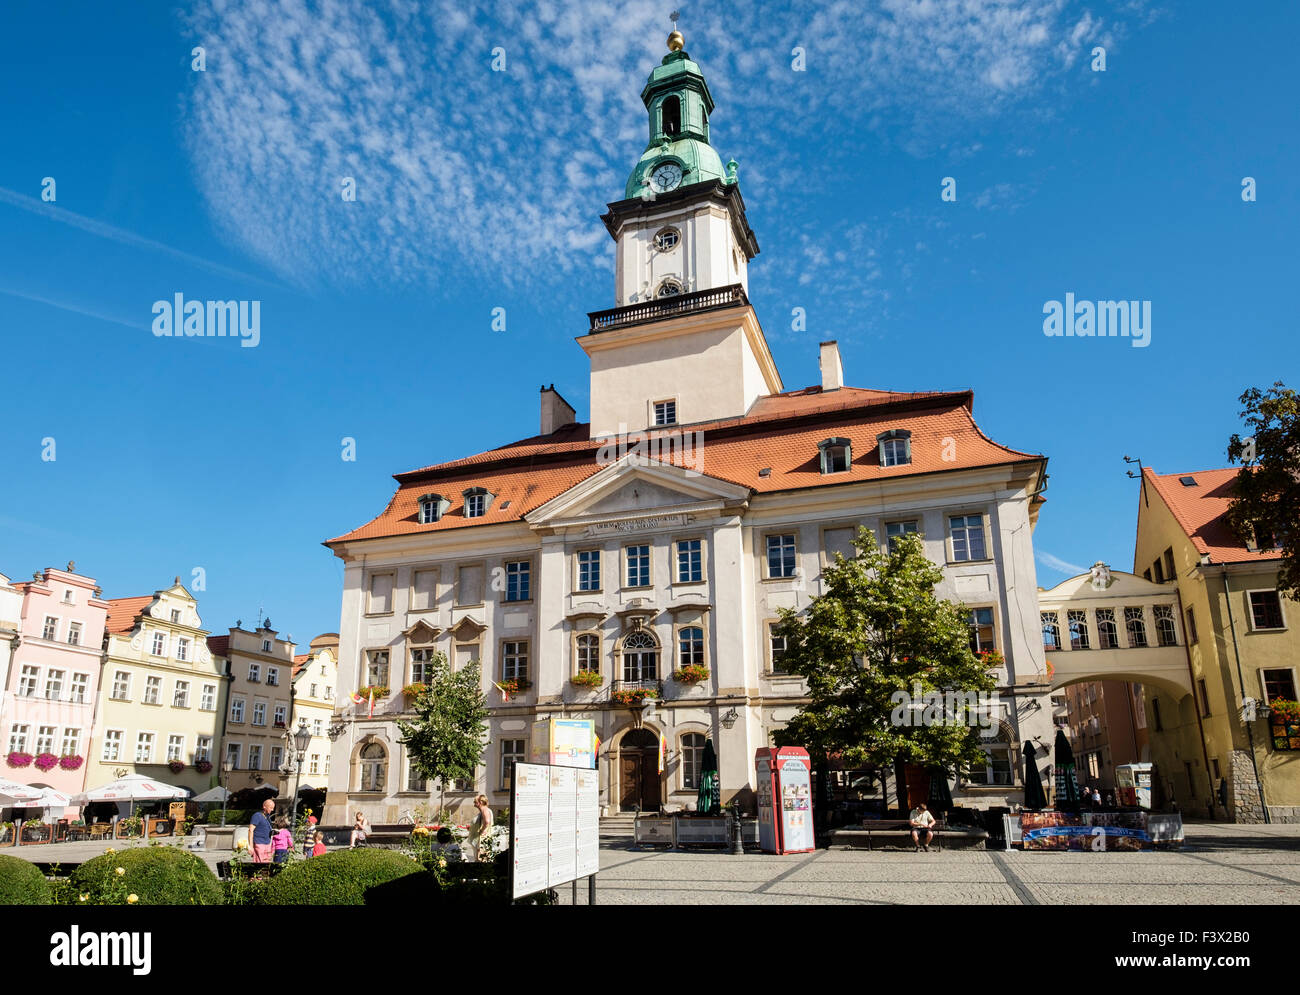 El Ayuntamiento, edificio del siglo XVIII en el Plac Ratuszowy o Plaza del Ayuntamiento, Jelenia Gora o Hirschberg, Baja Silesia, Polonia Foto de stock